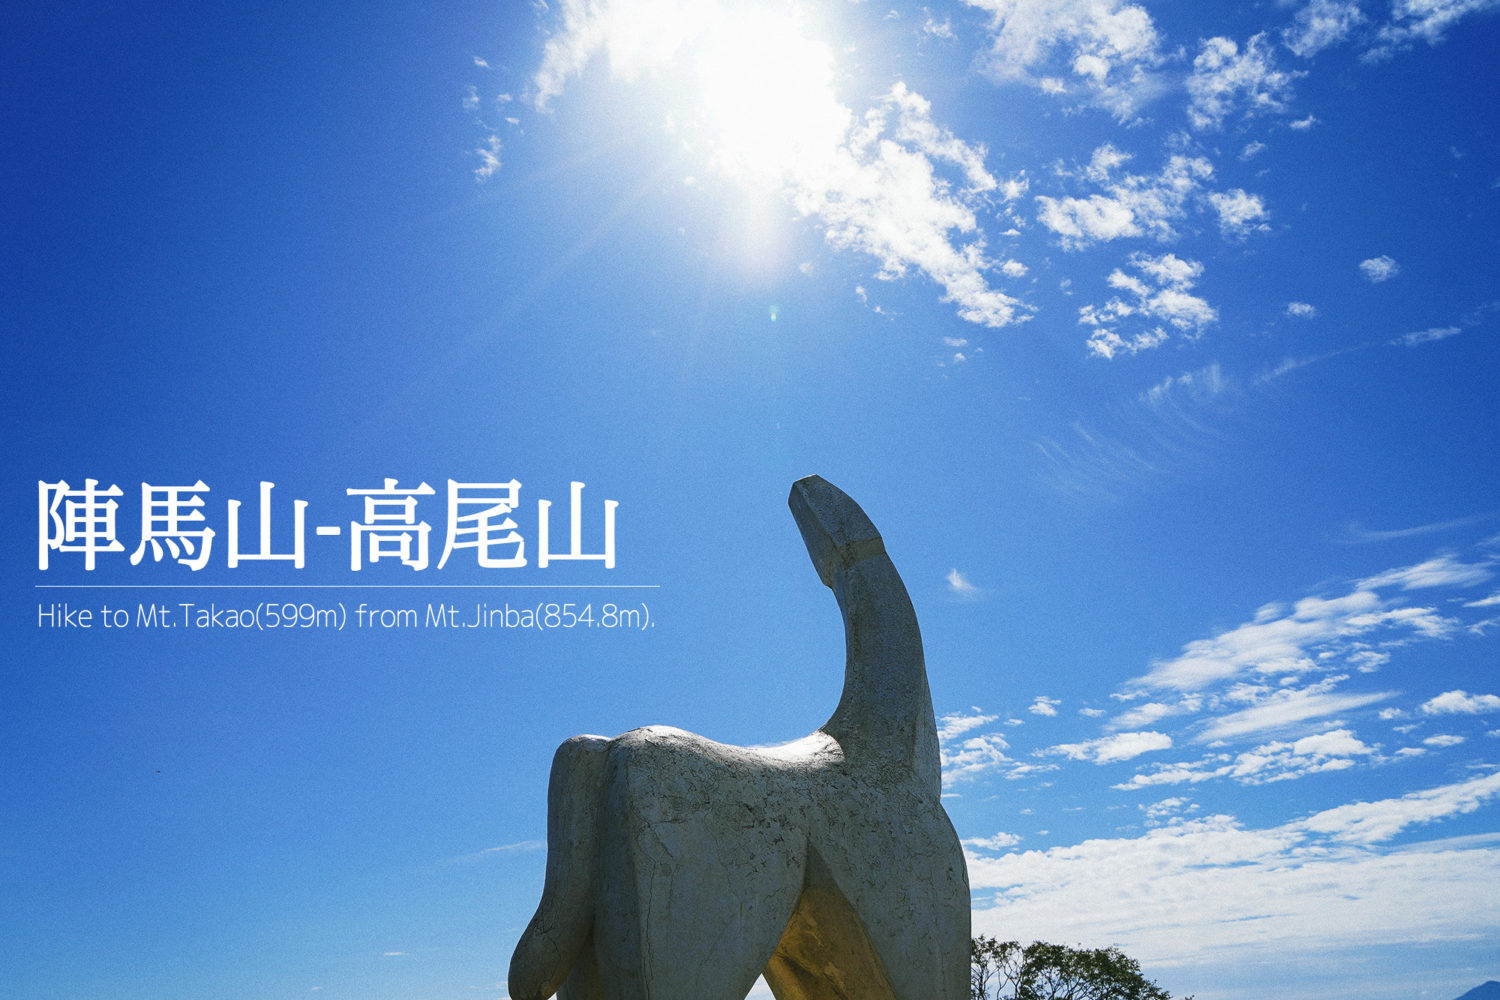 陣馬山のシンボル「白馬像」